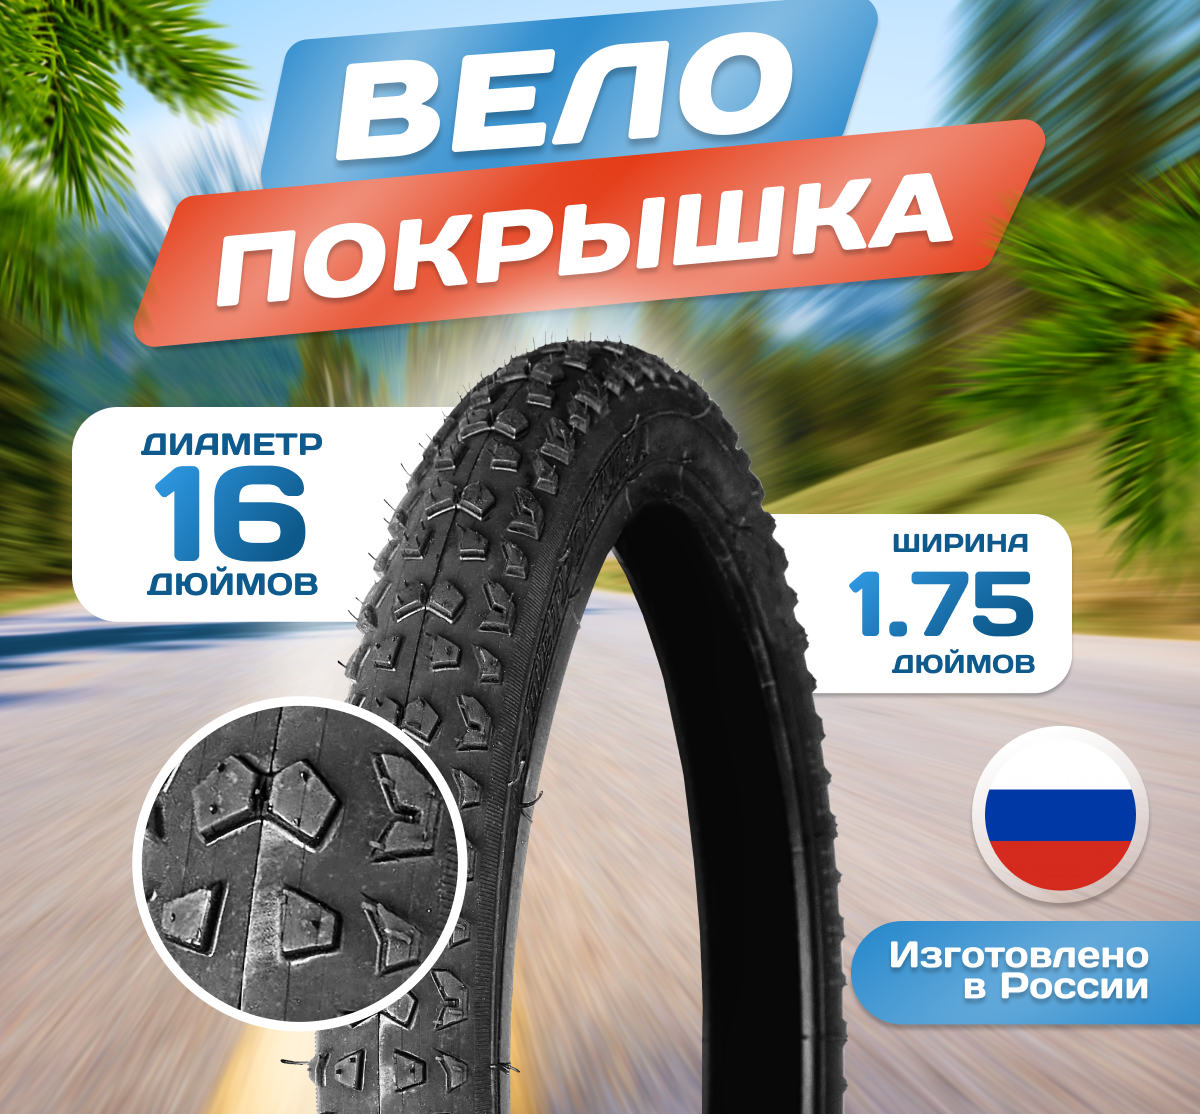 Покрышка для велосипеда 16х175 (47-305) Л-357 Россия